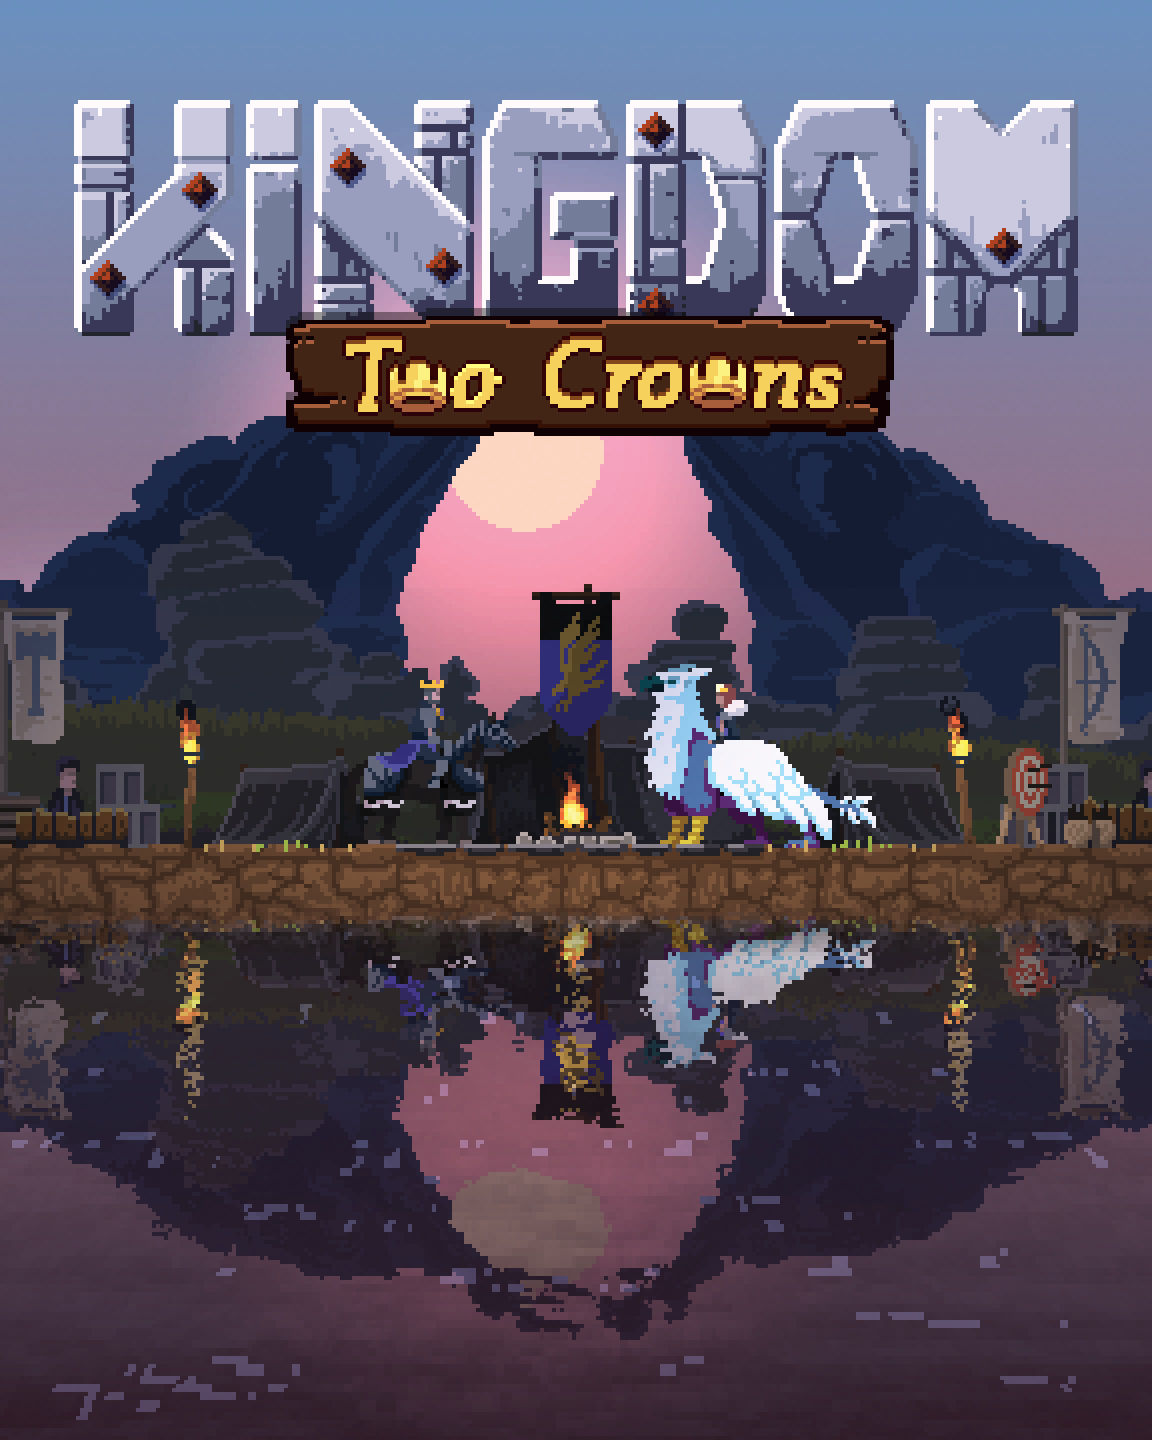 Kingdom, Kingdom Wiki